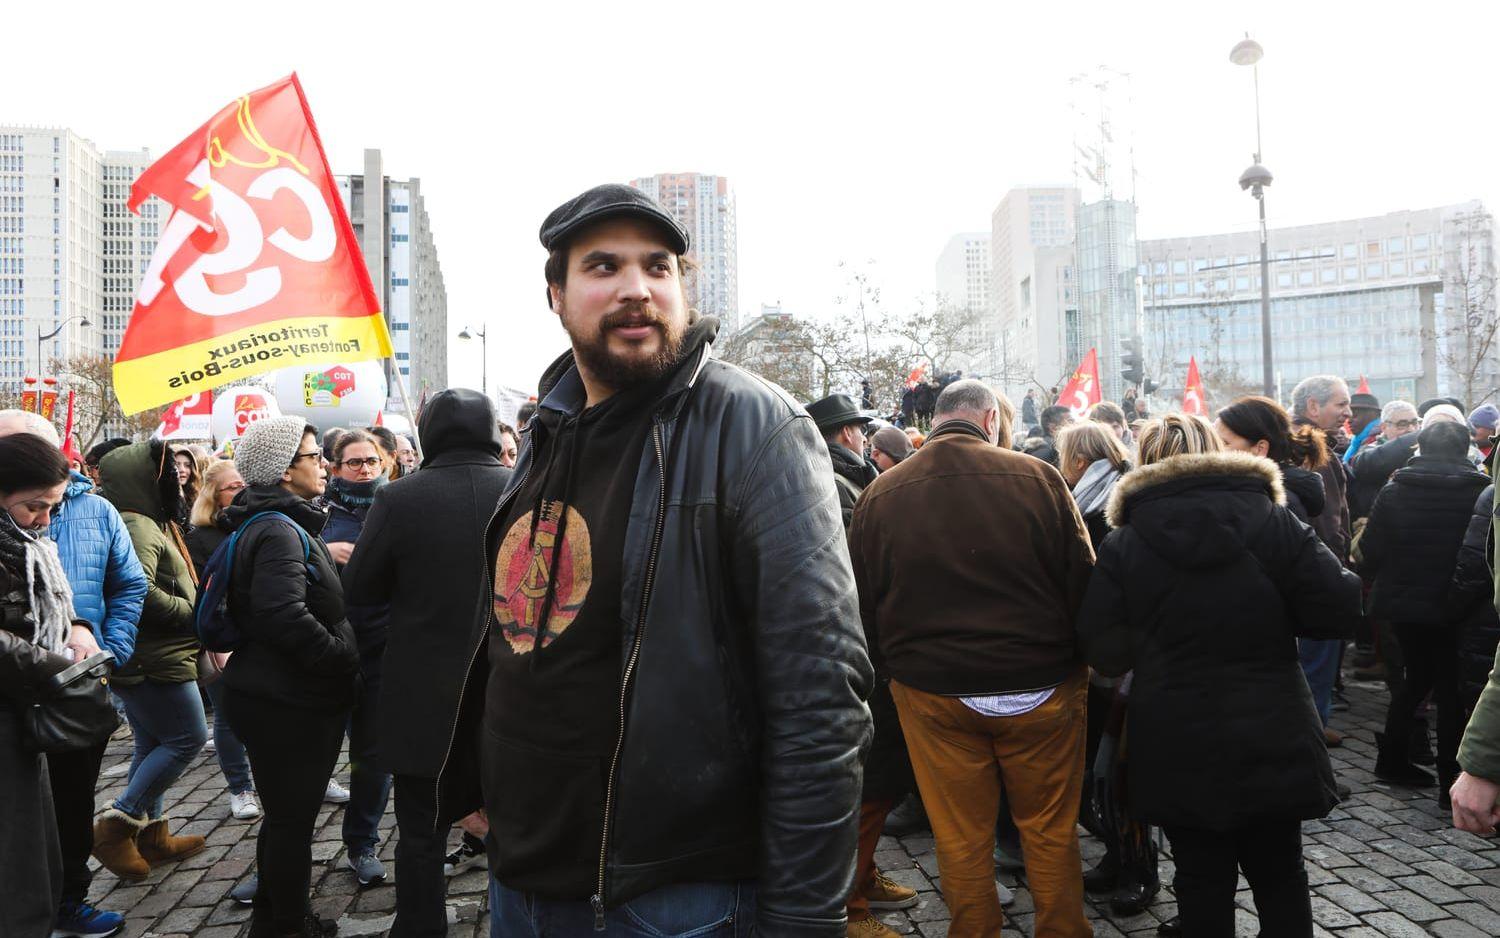 Fransk-svenske Axel Persson som arbetar som lokförare i Parisregionen och är medlem i mäktiga och vänsterradikala facket CGT. Han var del av de omfattande demonstrationerna i Frankrike under tisdagen.